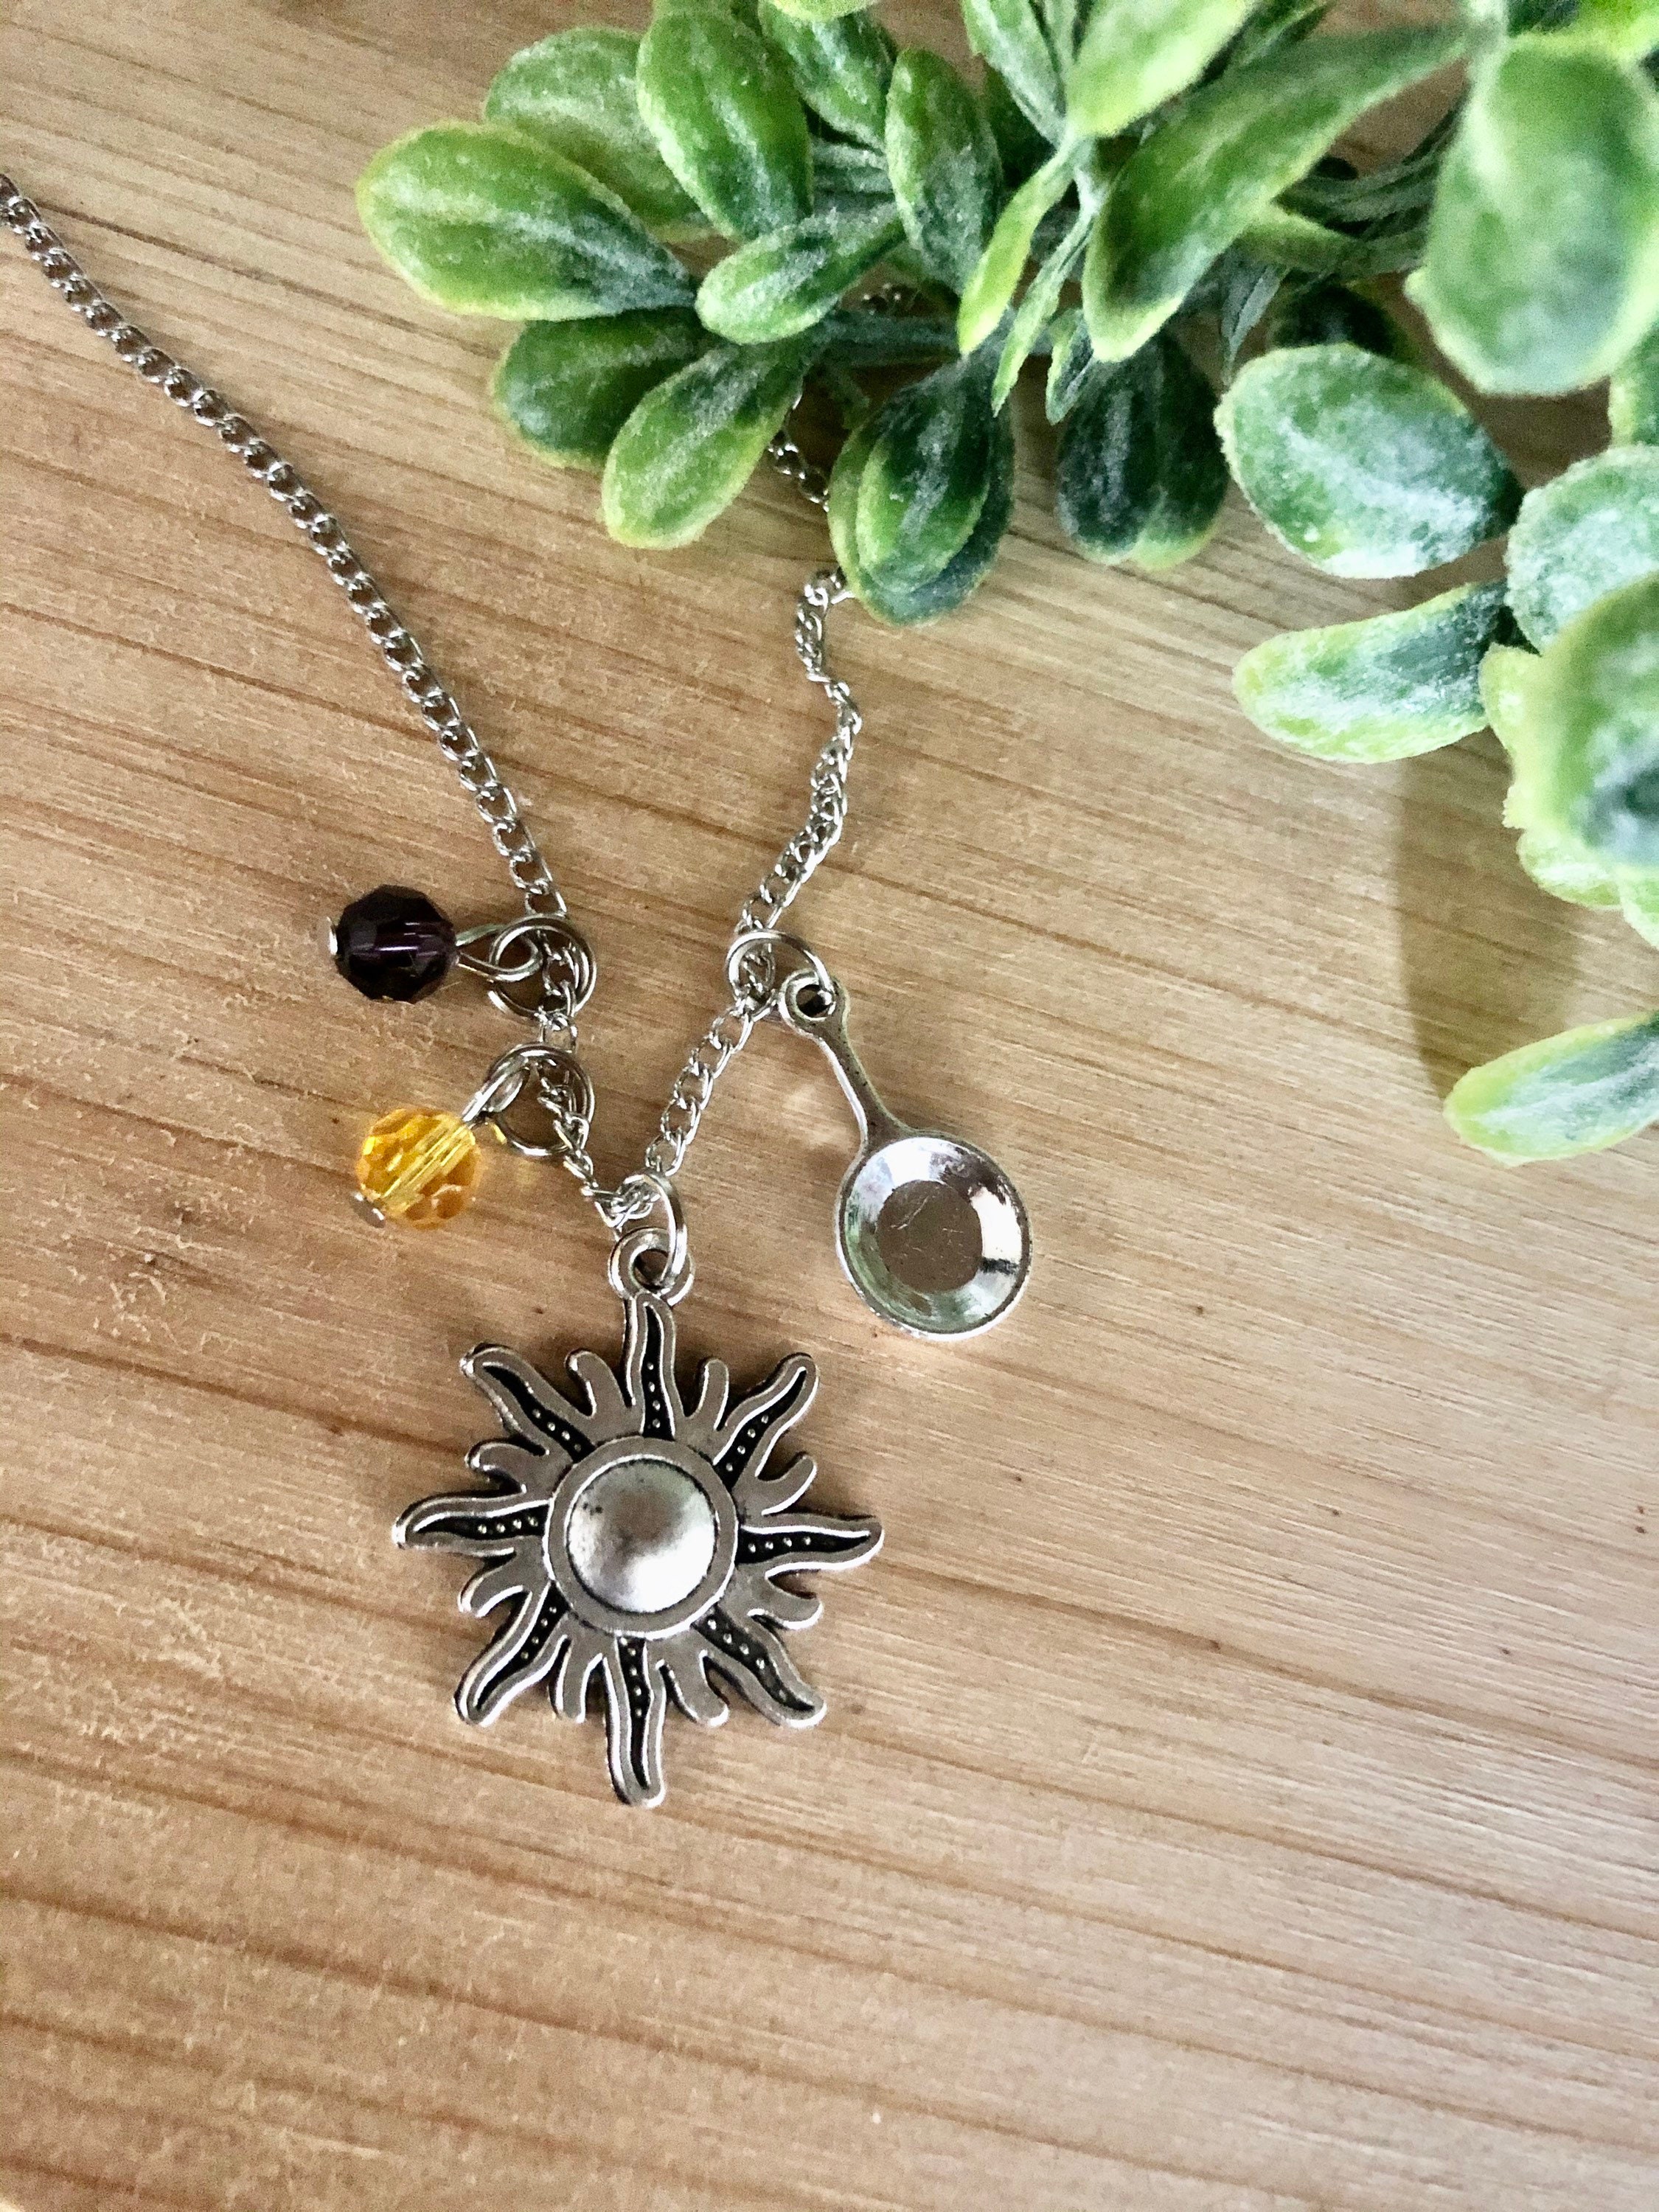 Sun Pendant Silver Swirl Necklace Small - FantaSea Jewelry